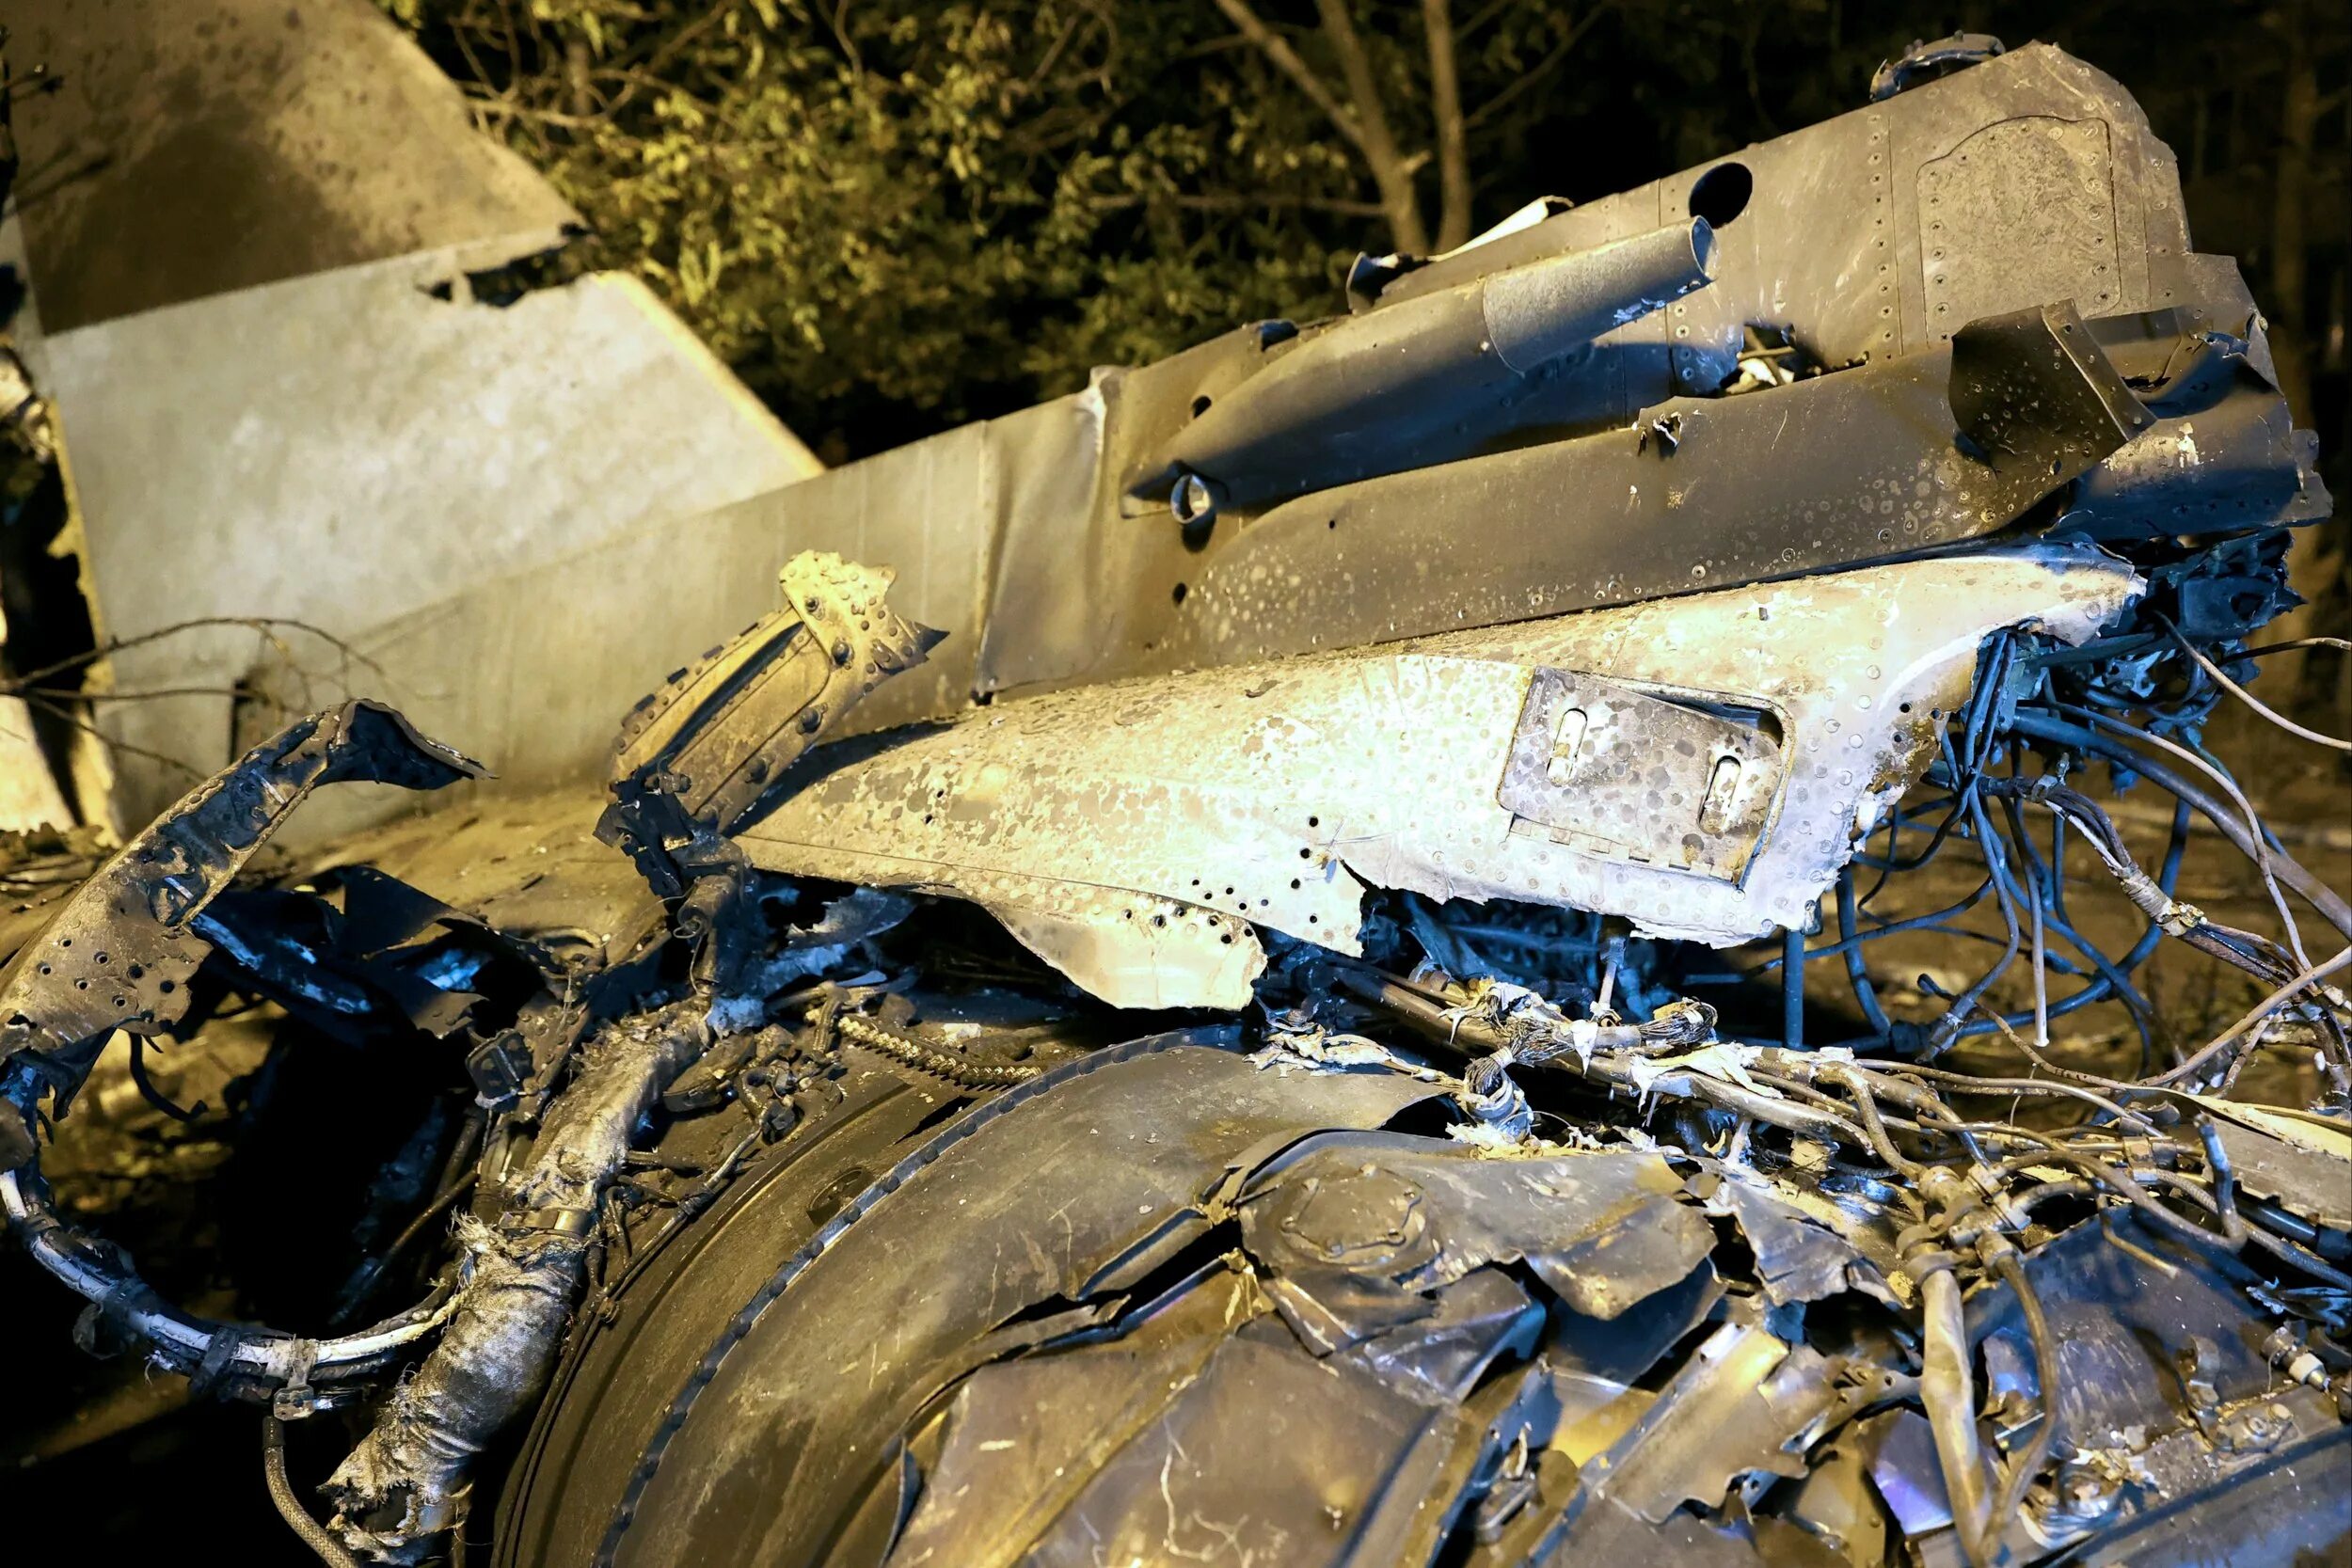 Сгорел су 34. Авиакатастрофа Су-34 в Ейске. Крушение самолета Су 34 в Ейске.